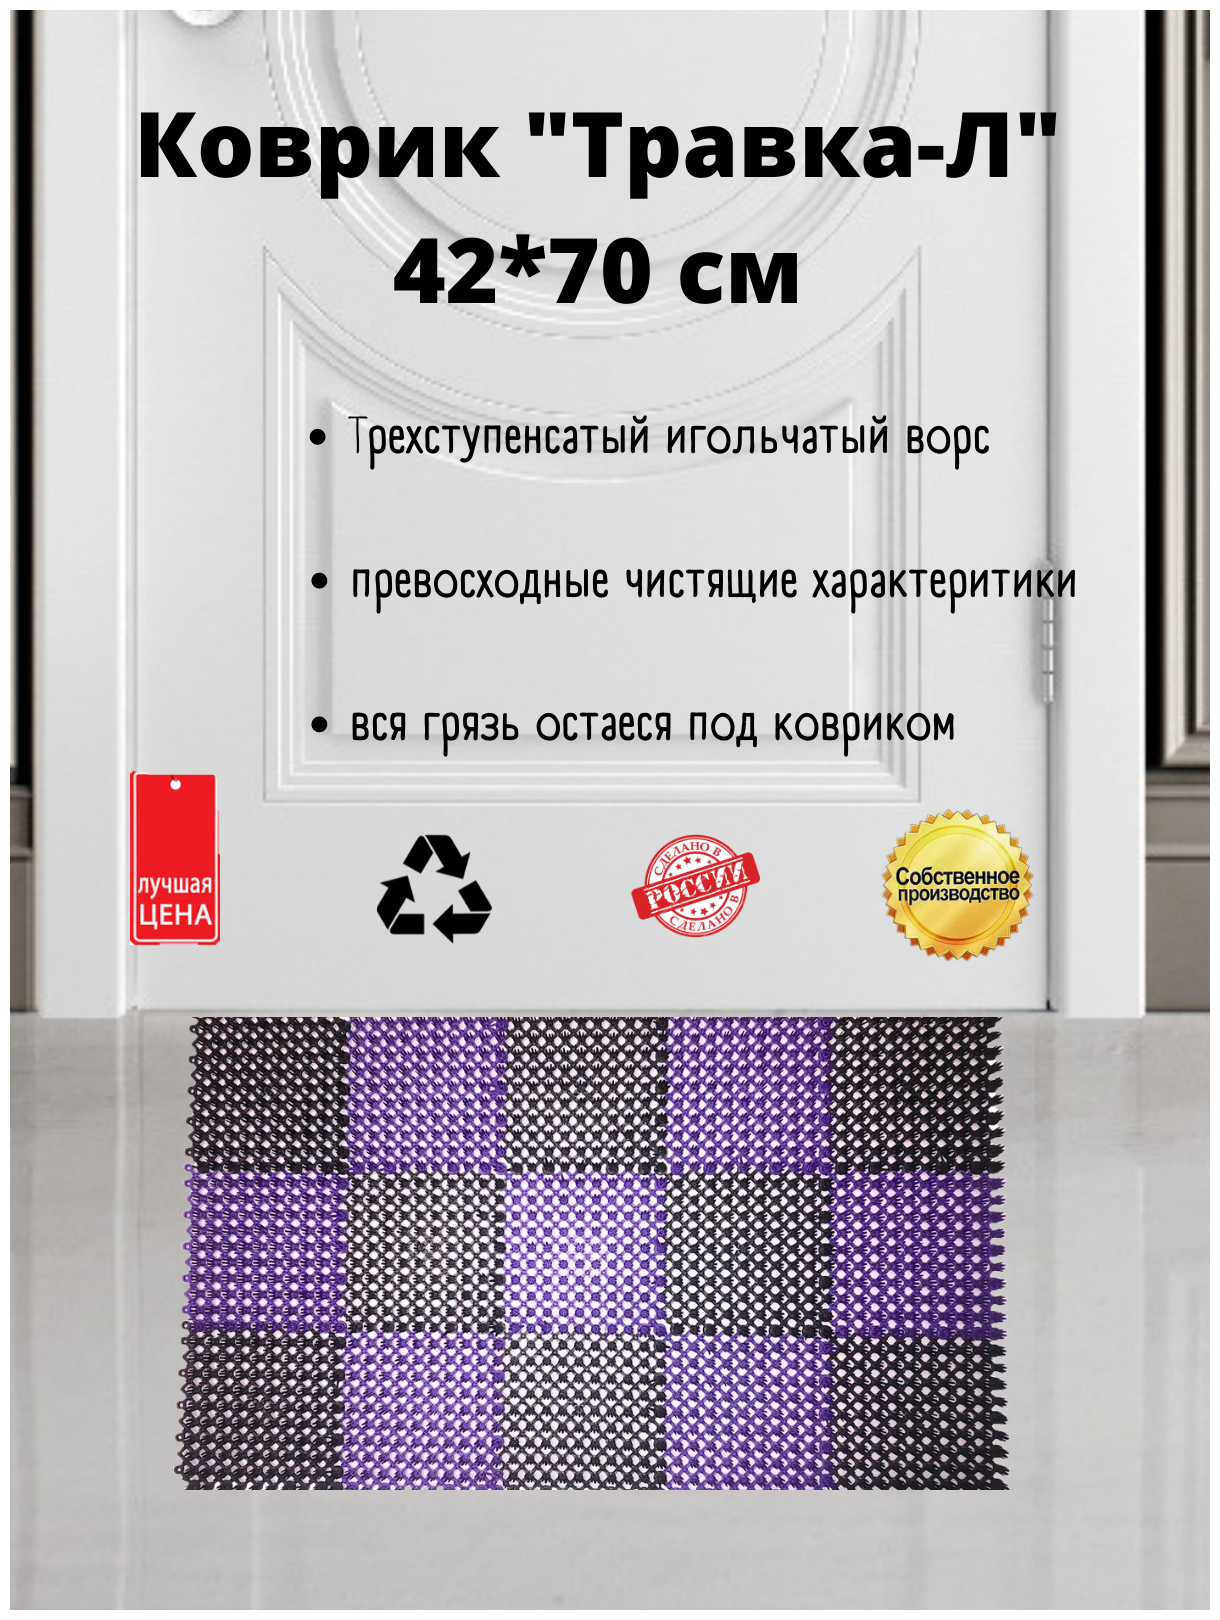 Коврик "Травка-Л" 42 х 70 см черно-фиолетовый